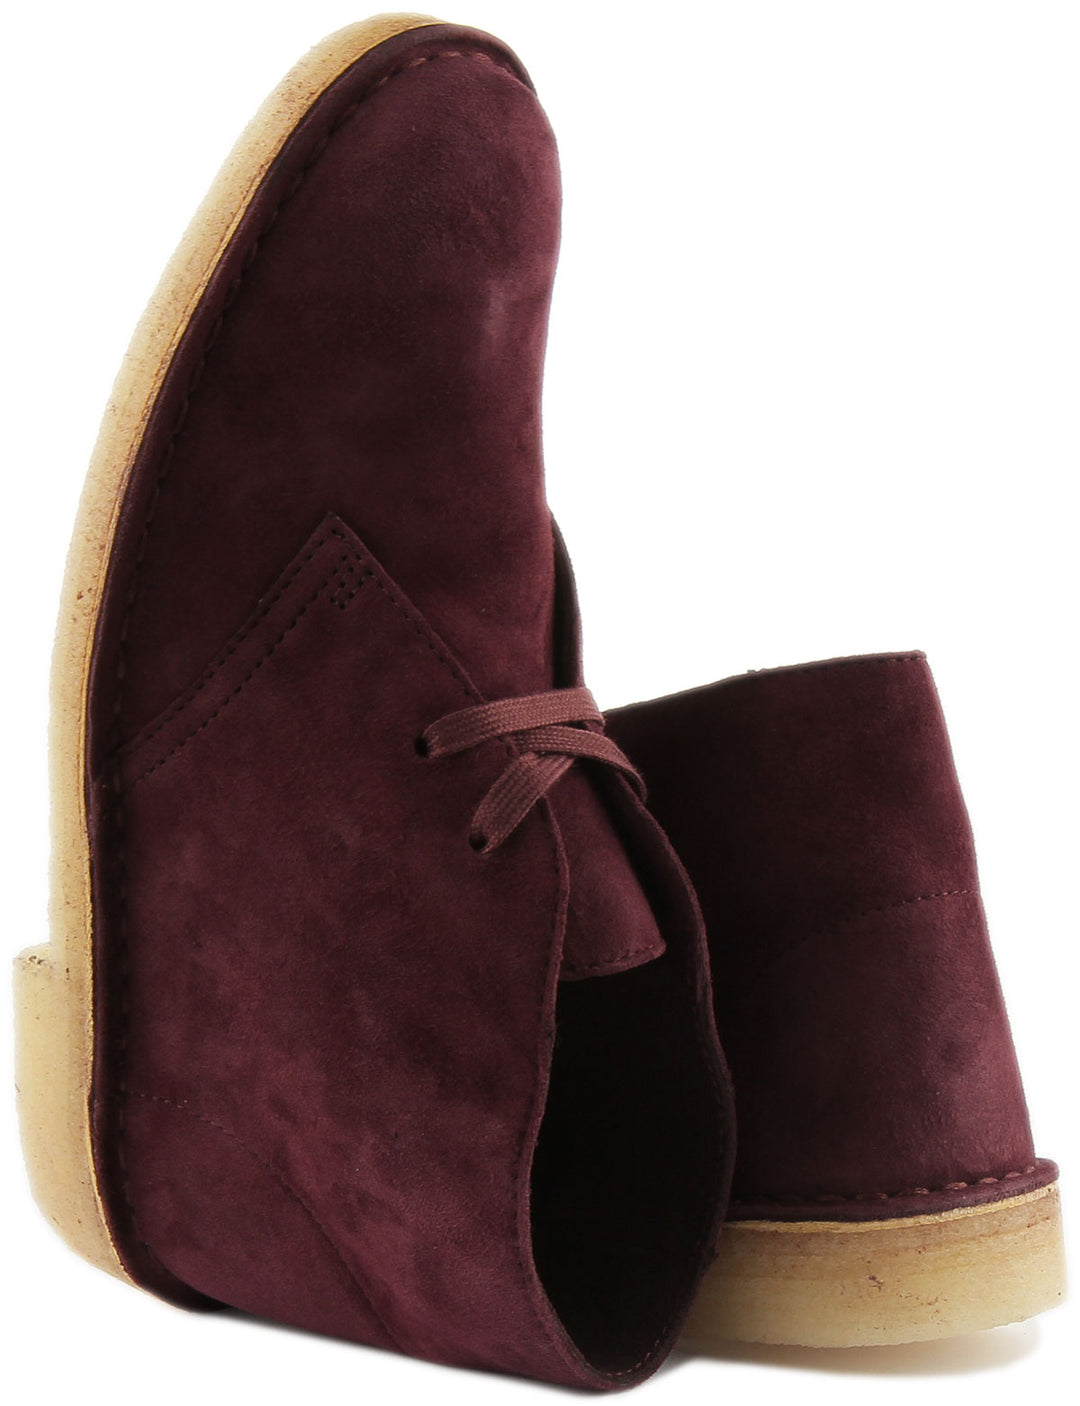 Clarks Originals Desert Boots In Purple For Women